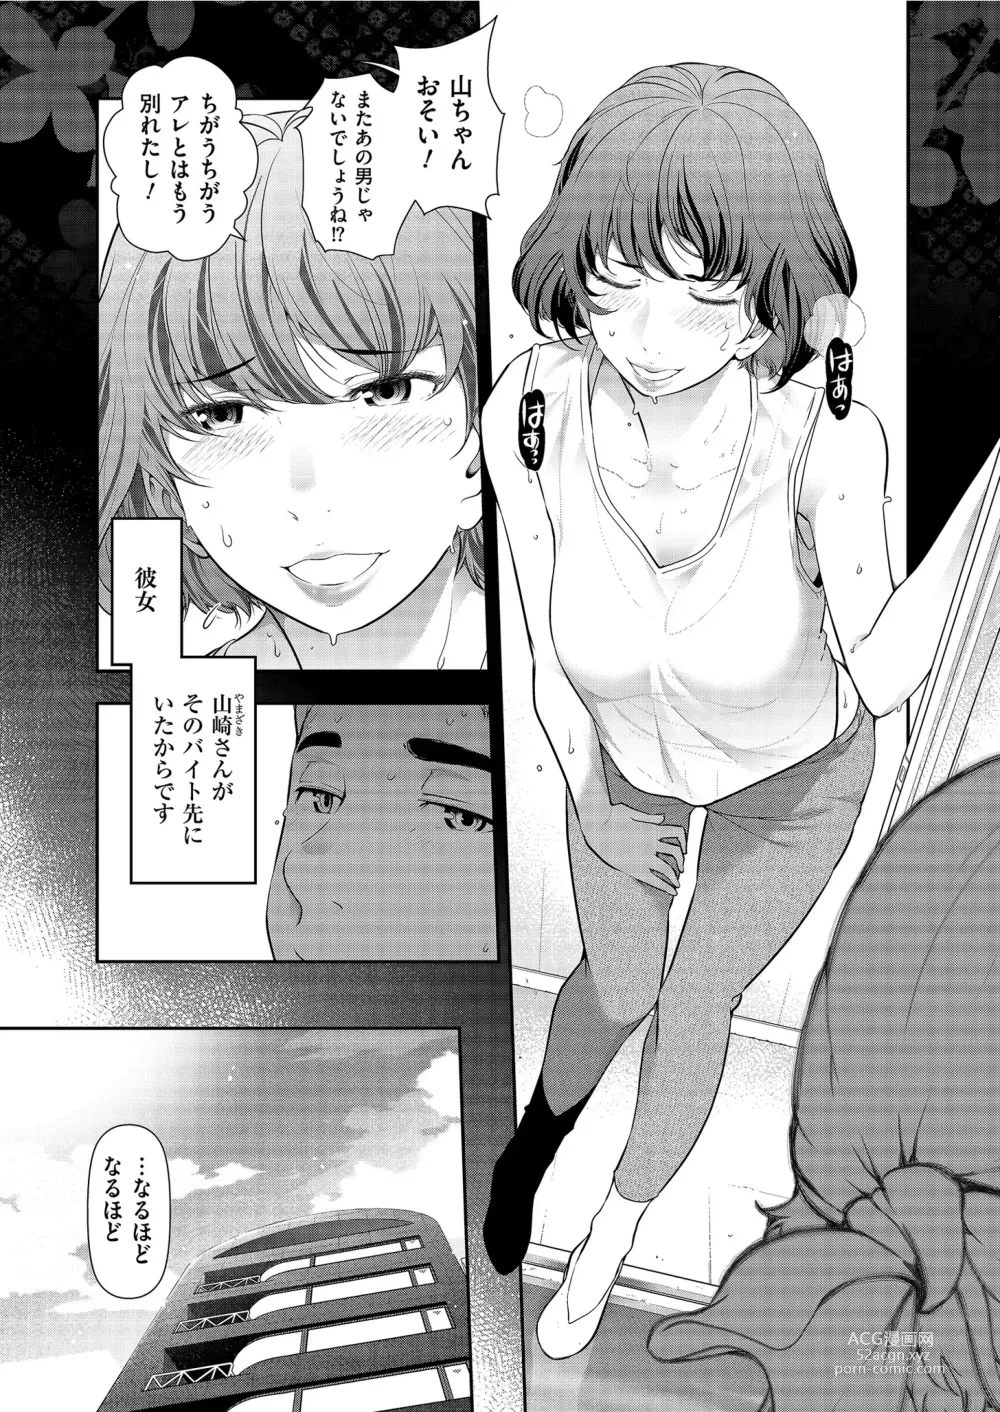 Page 7 of manga Yonimo Kanbi na Toshi Densetsu BF